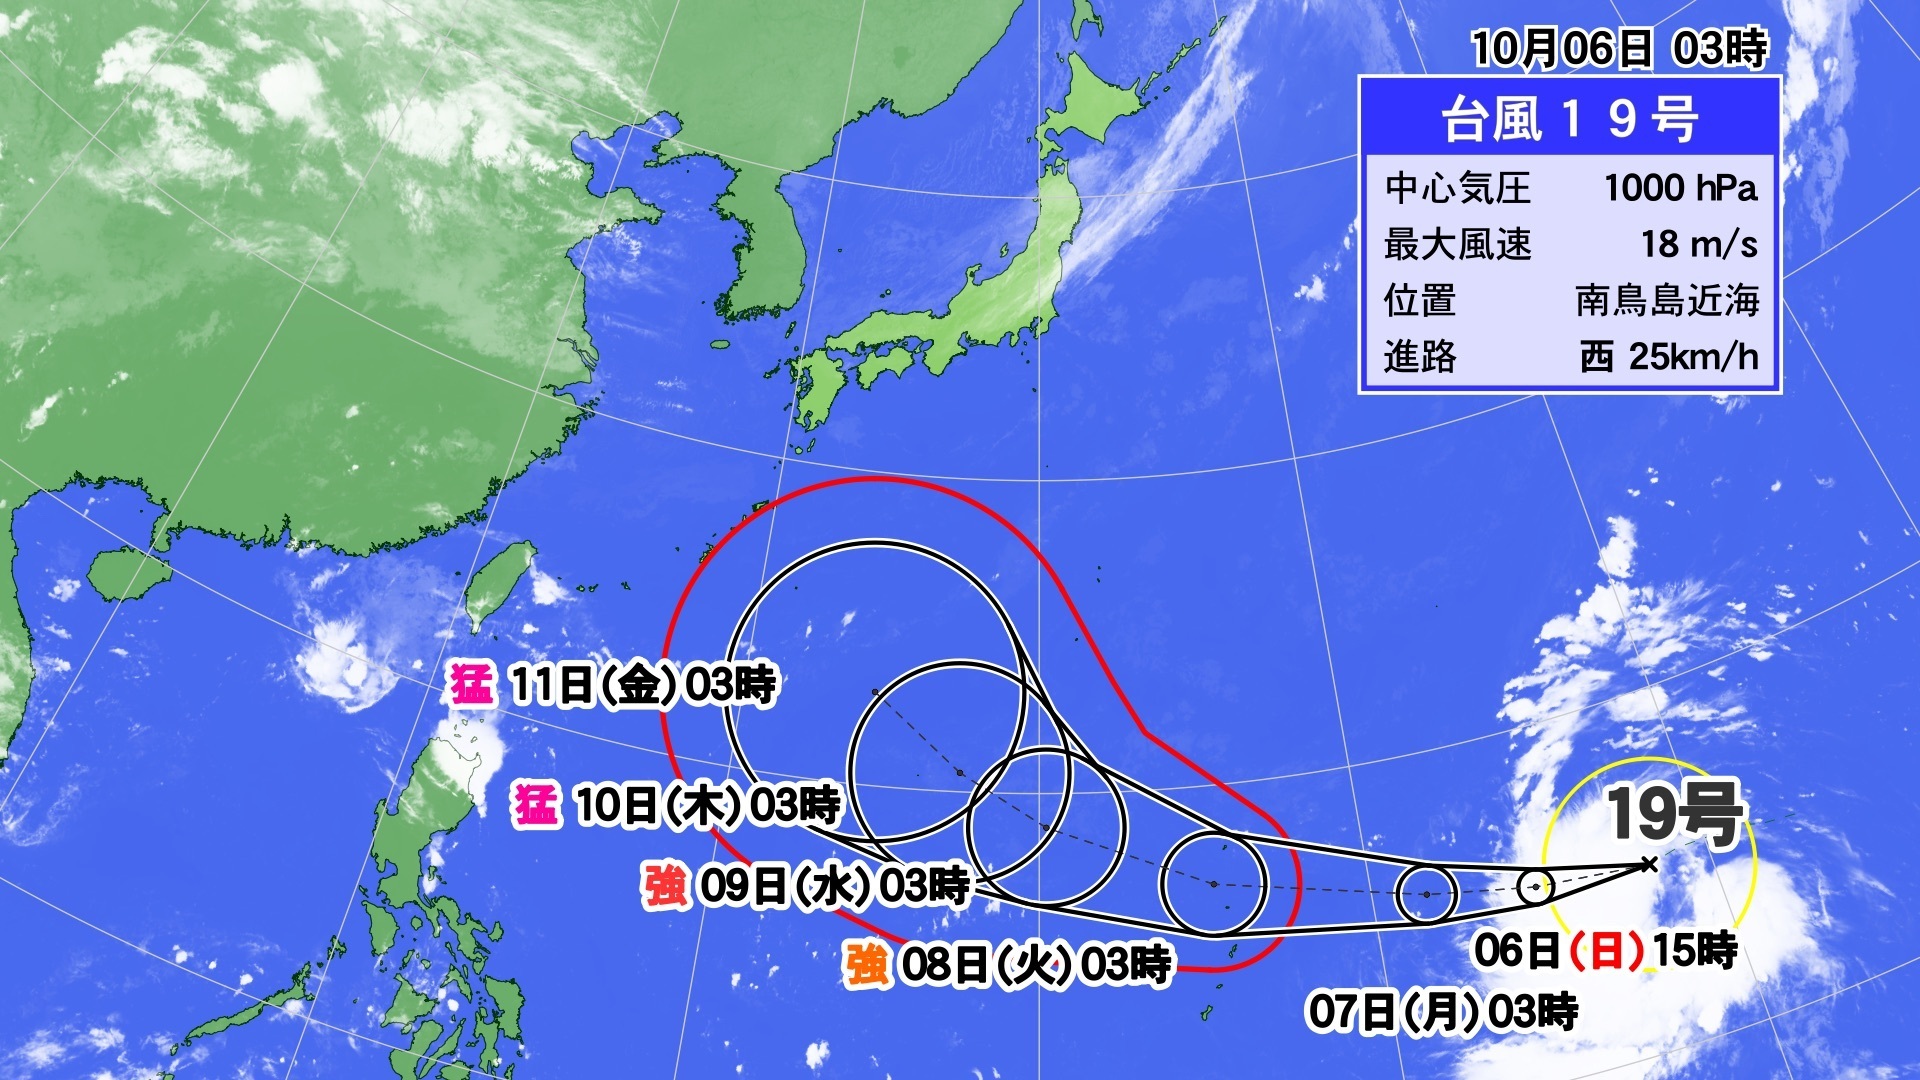 台風19号 最新 進路予想 気象庁 米軍 3連休 日本列島 直撃 東海地方 影響